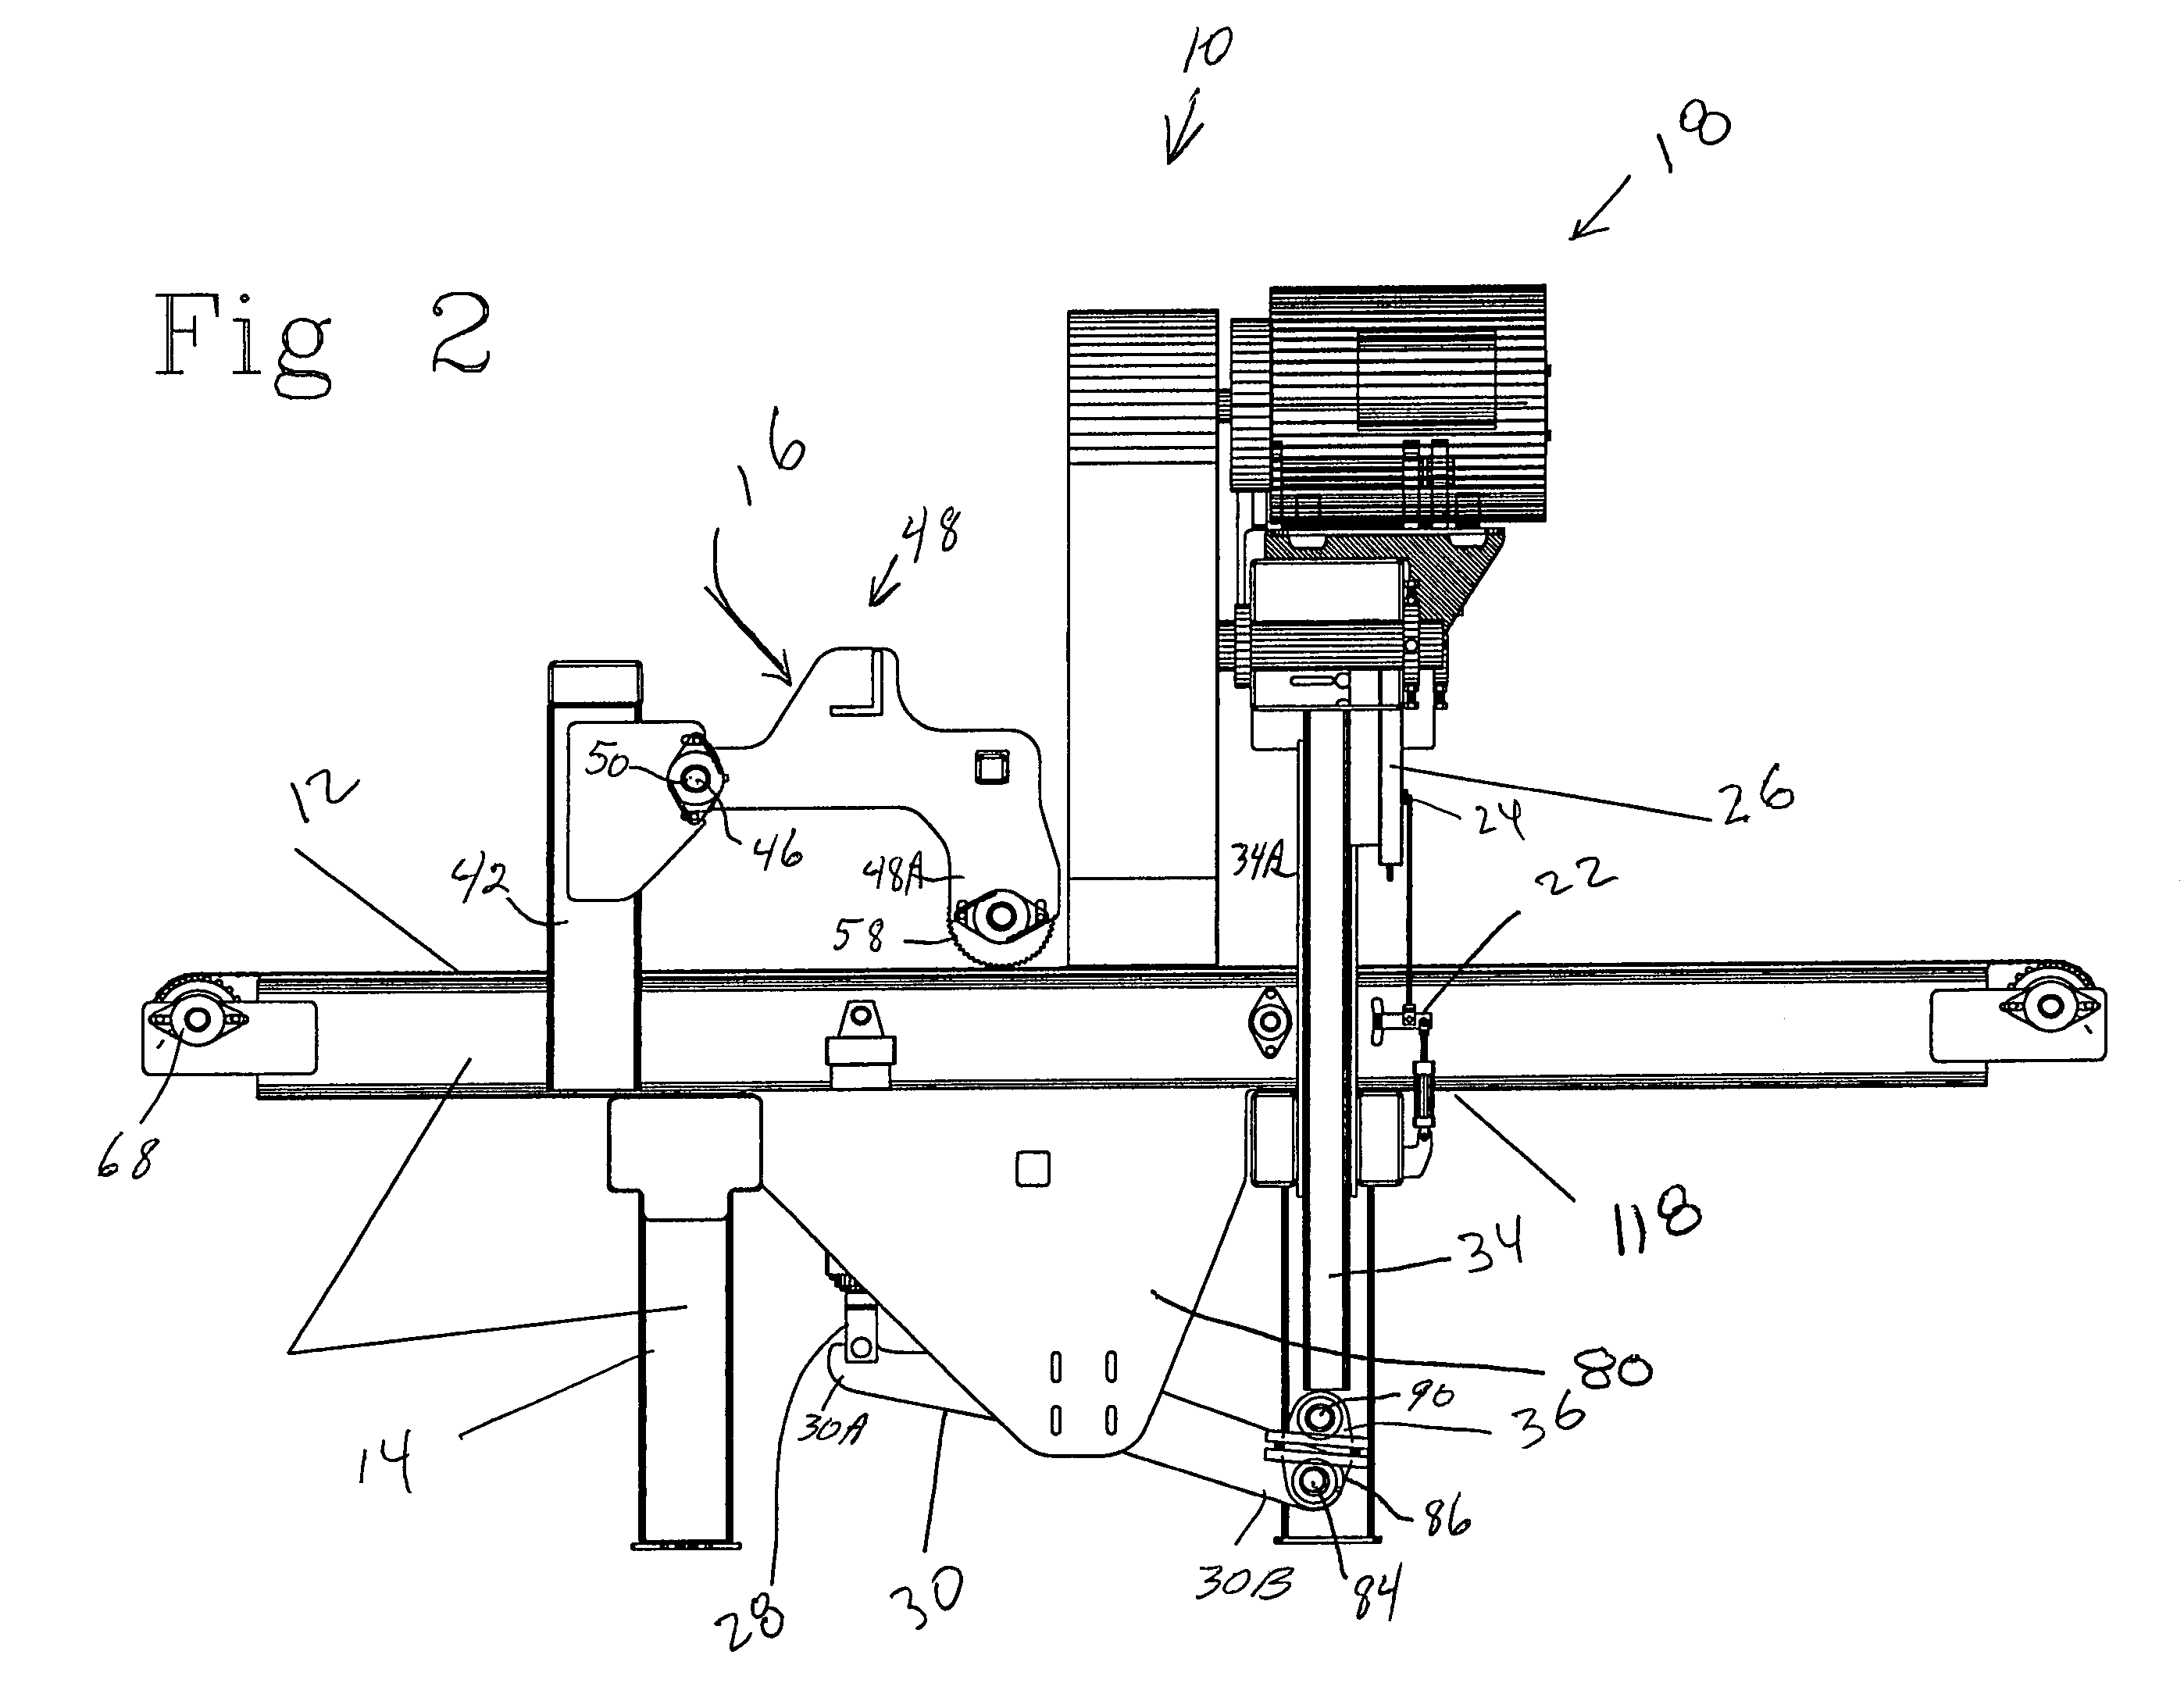 Horizontal curve sawing apparatus